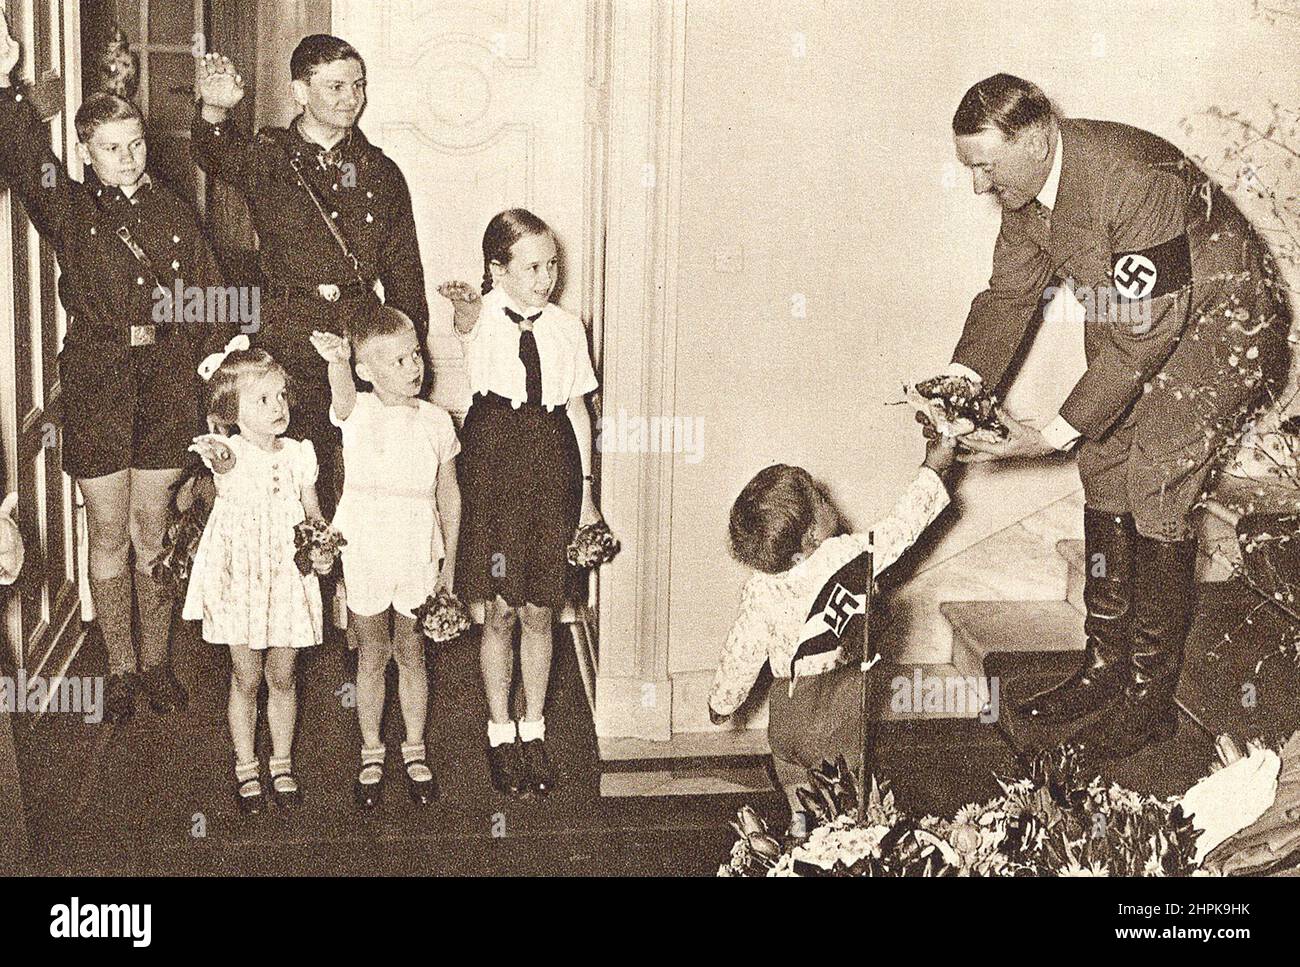 Adolf Hitler et un groupe d'enfants. Allemagne, 1930s. Banque D'Images